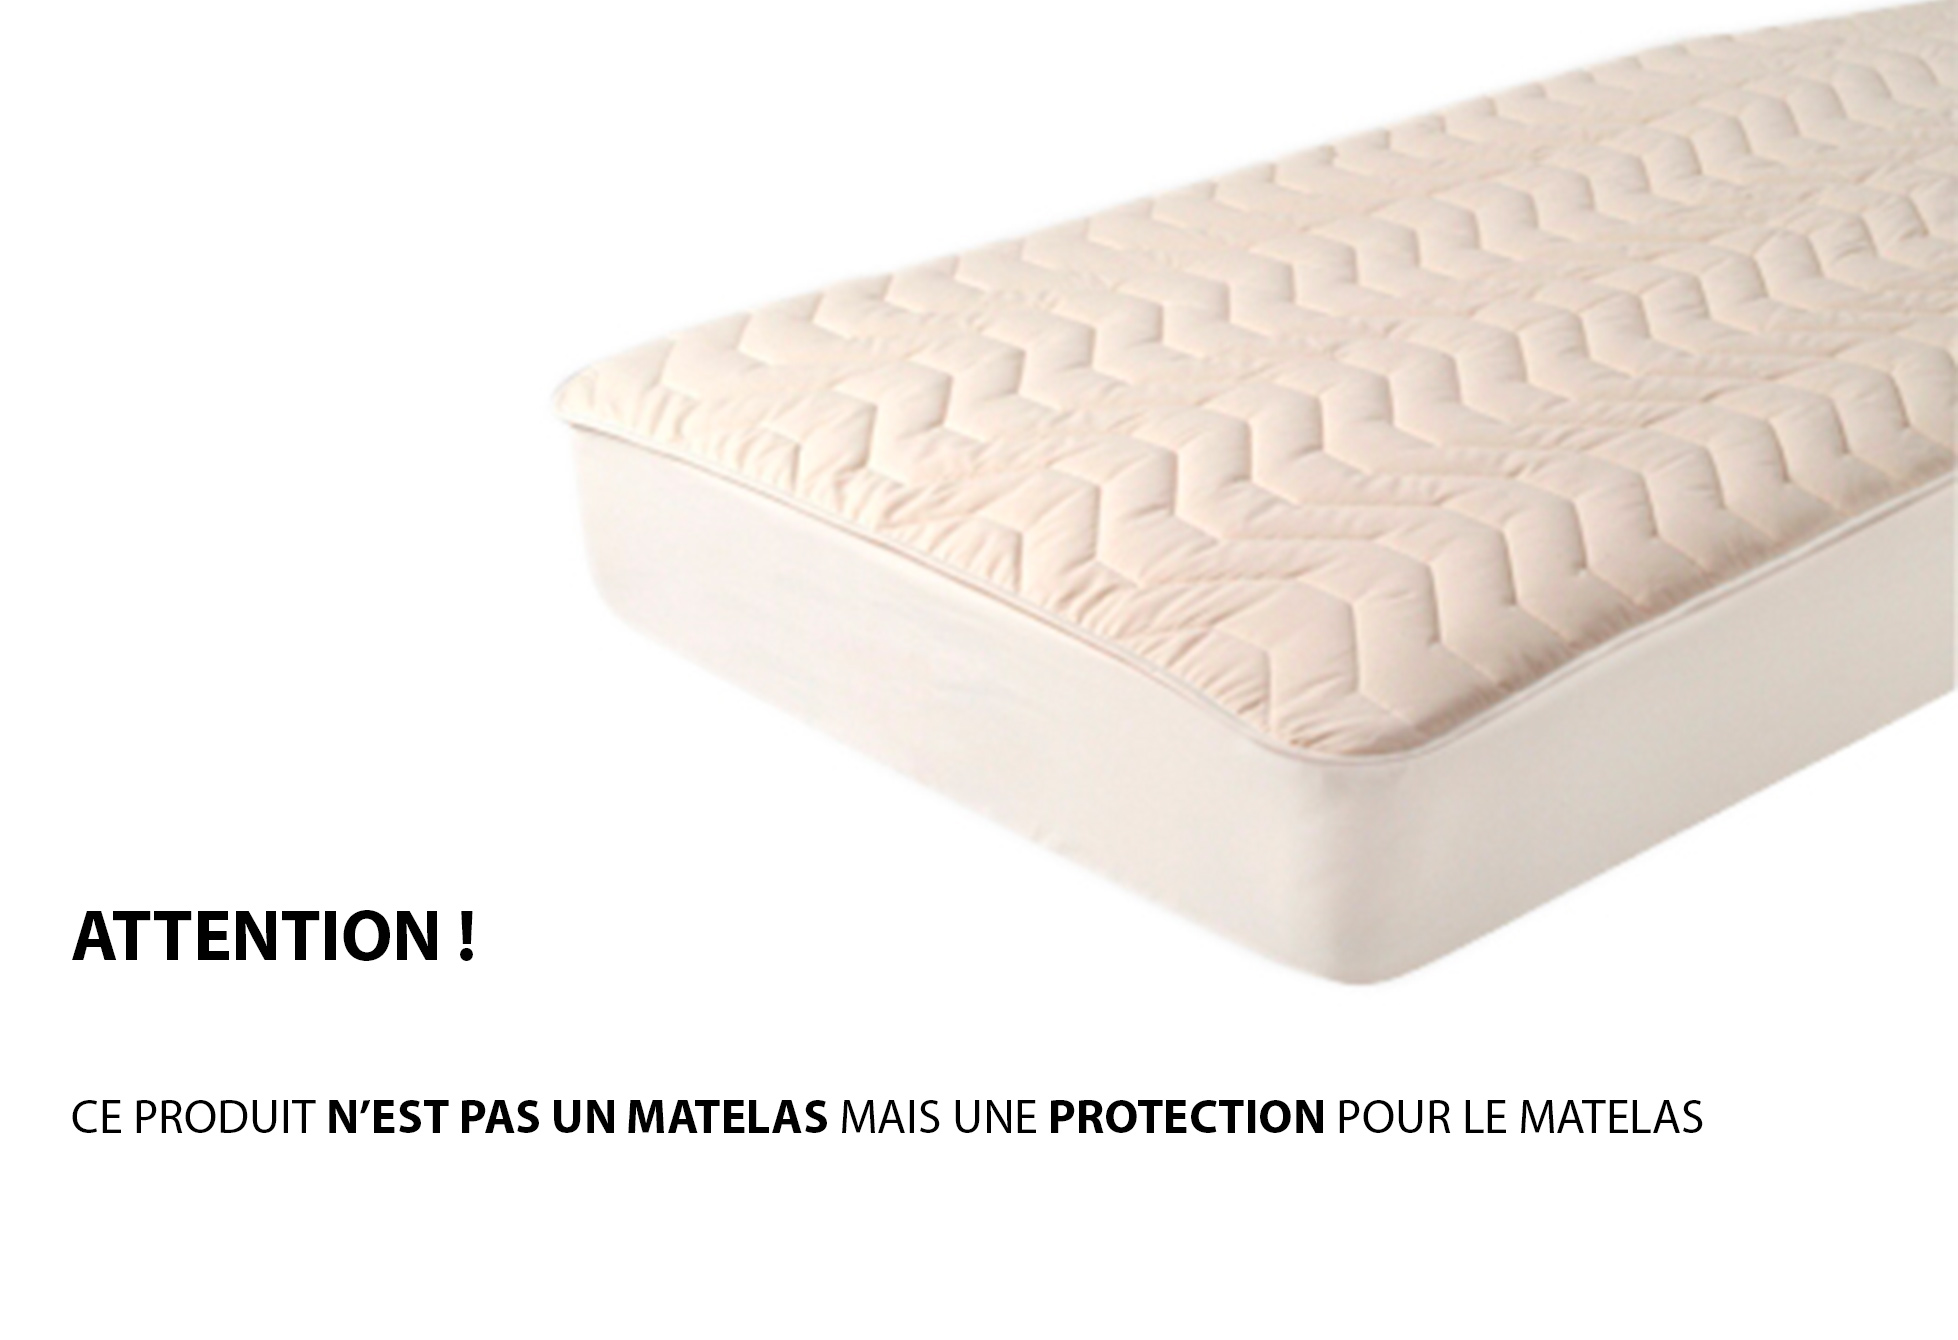 Protège matelas Moshy FLEUR DE COTON PROTECTION  160x200 (Queen size)